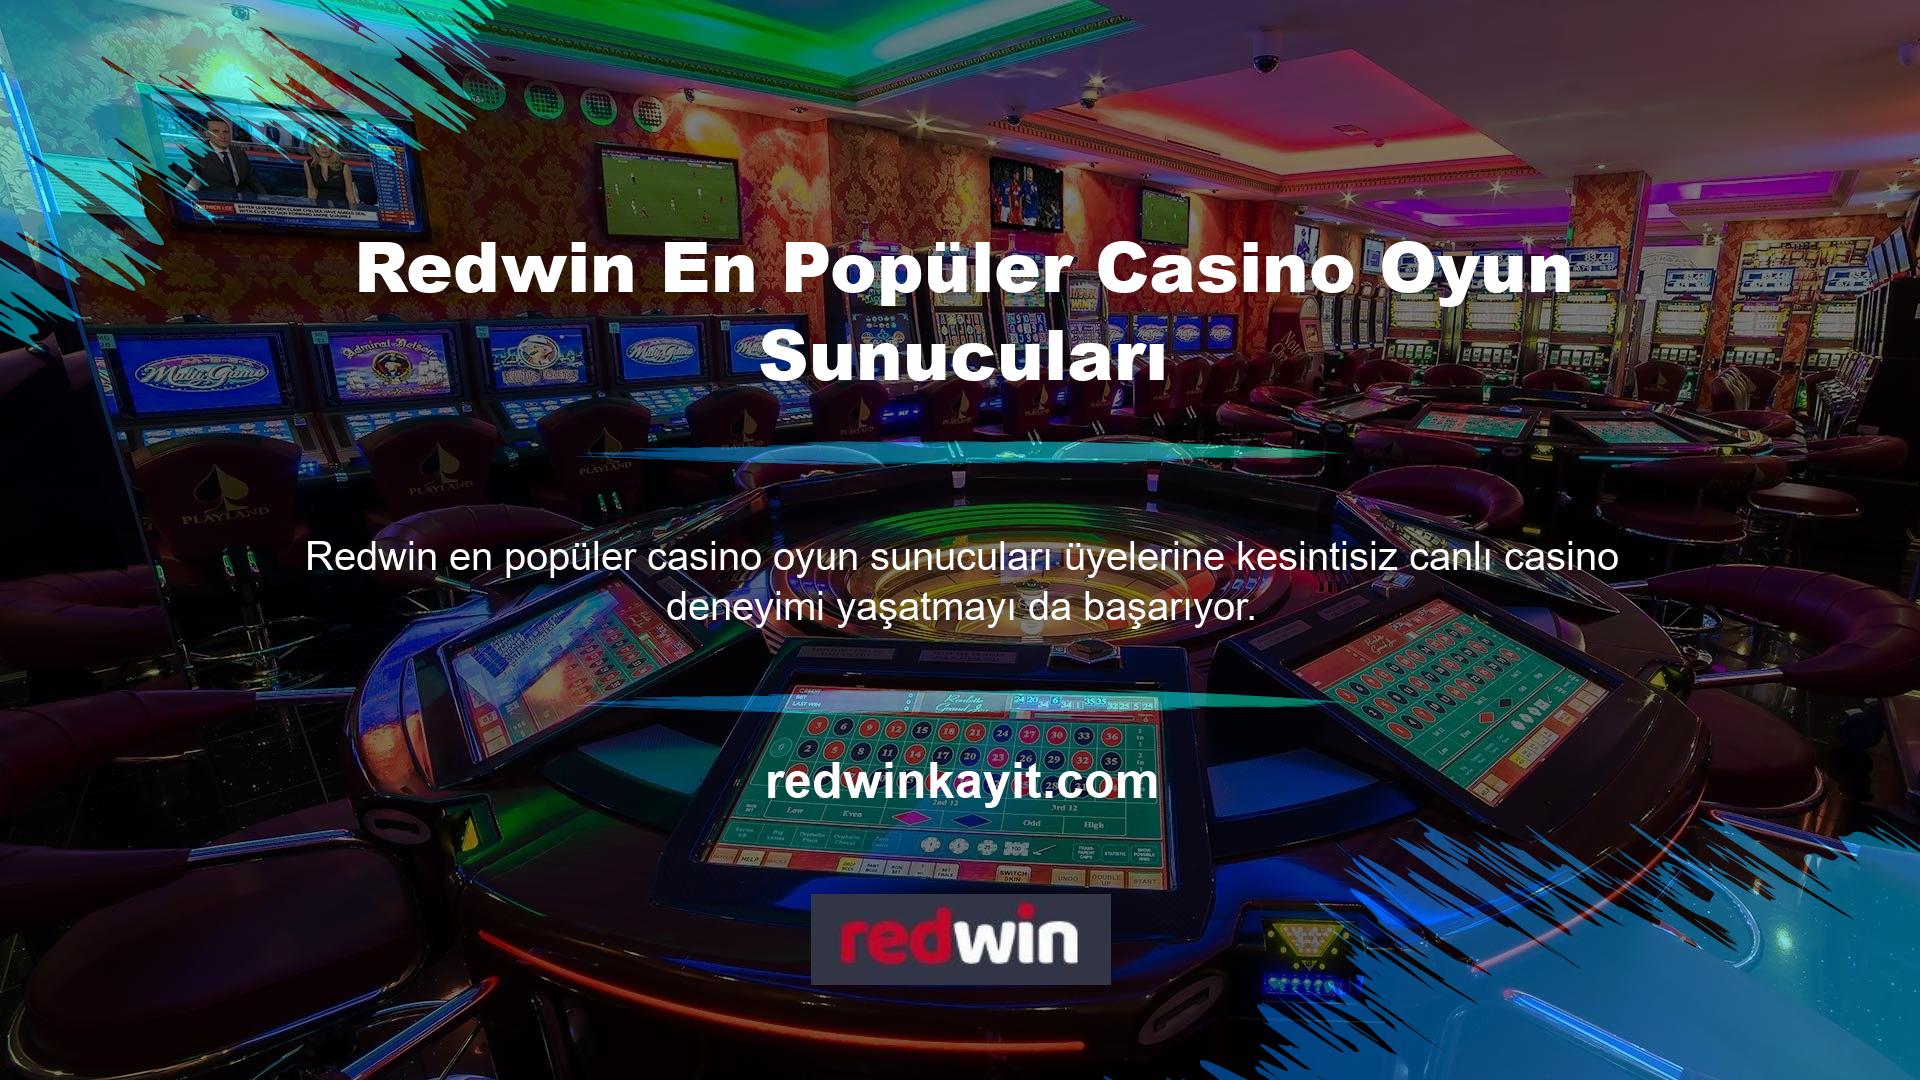 Canlı casino ziyaretçileri, Redwin üyelerinin bahis oynamalarına gerek kalmadan maçları izlemelerine olanak sağlıyor